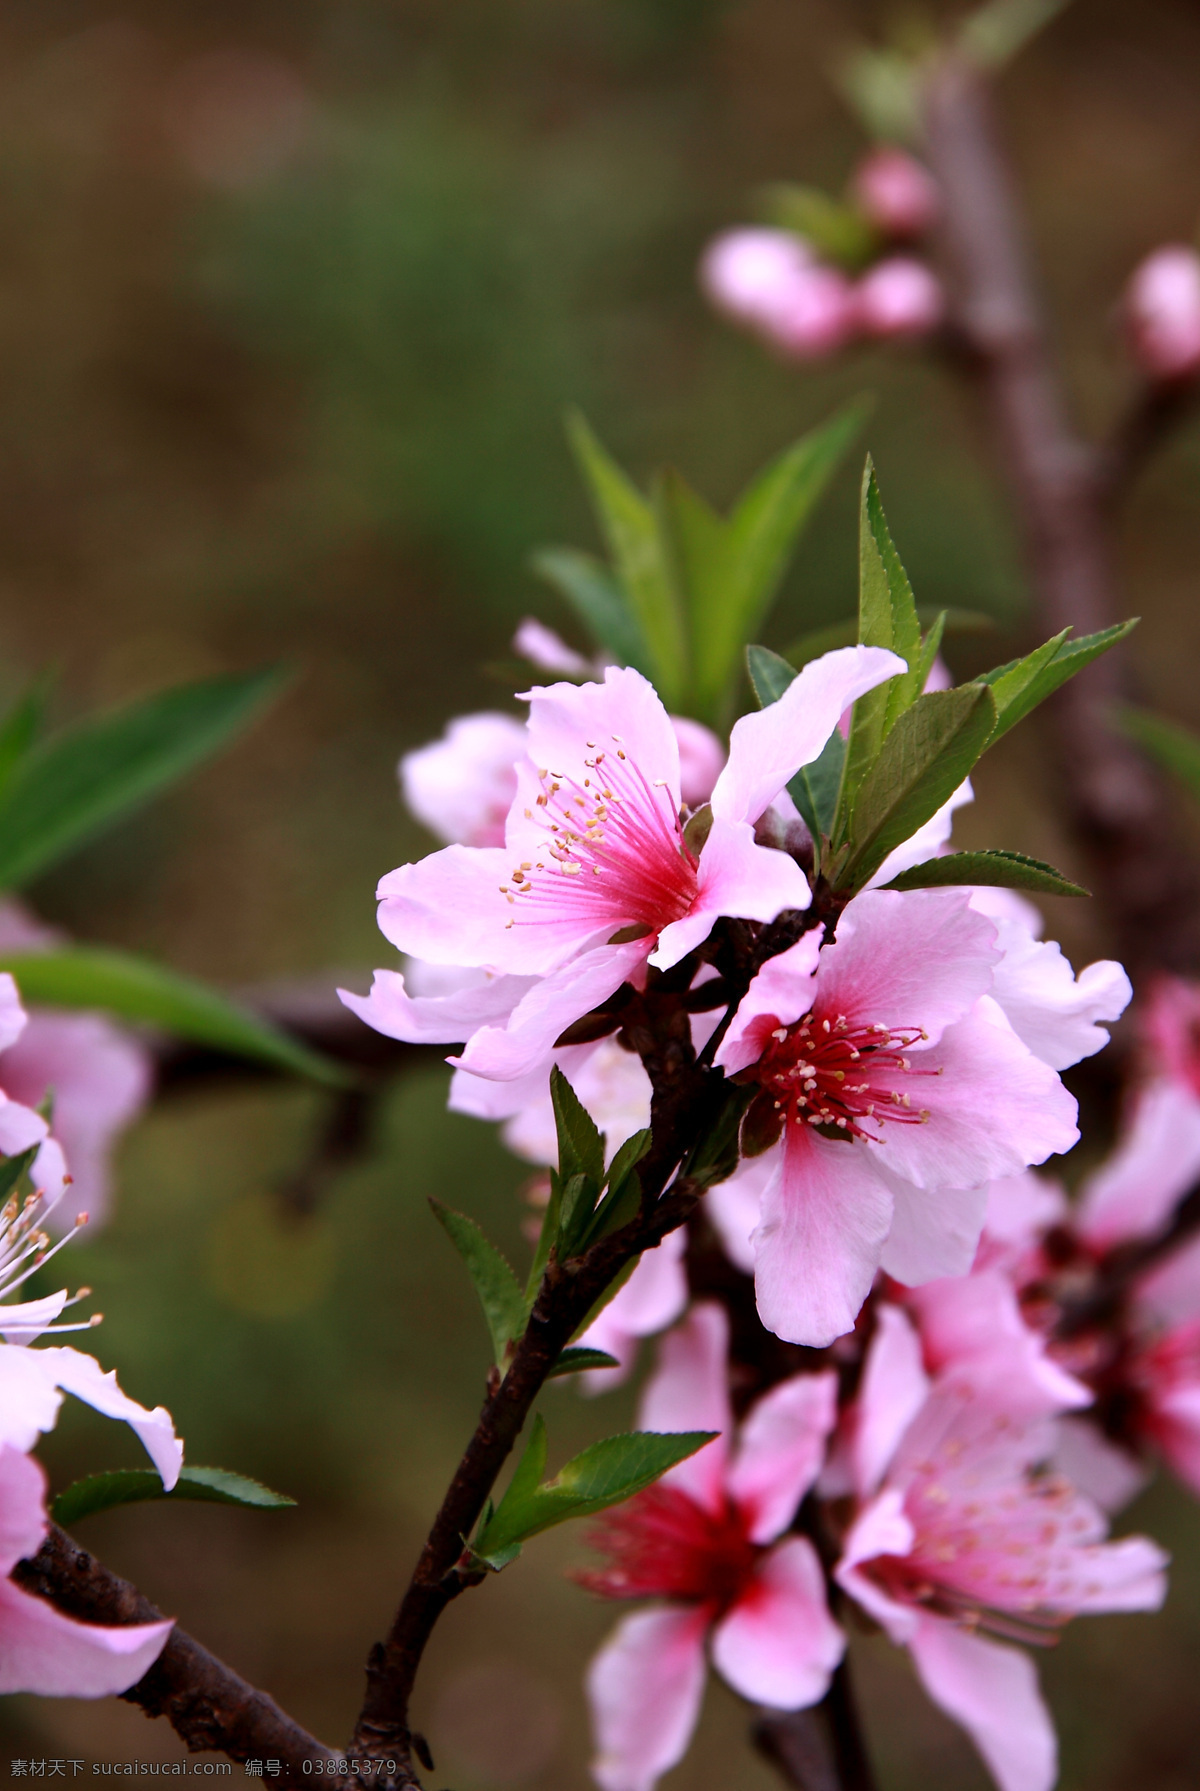 桃花系列 桃花 植物 摄影图片 生态 平面 照片 花卉 庭院盆栽 种植 水果 生物世界 花草